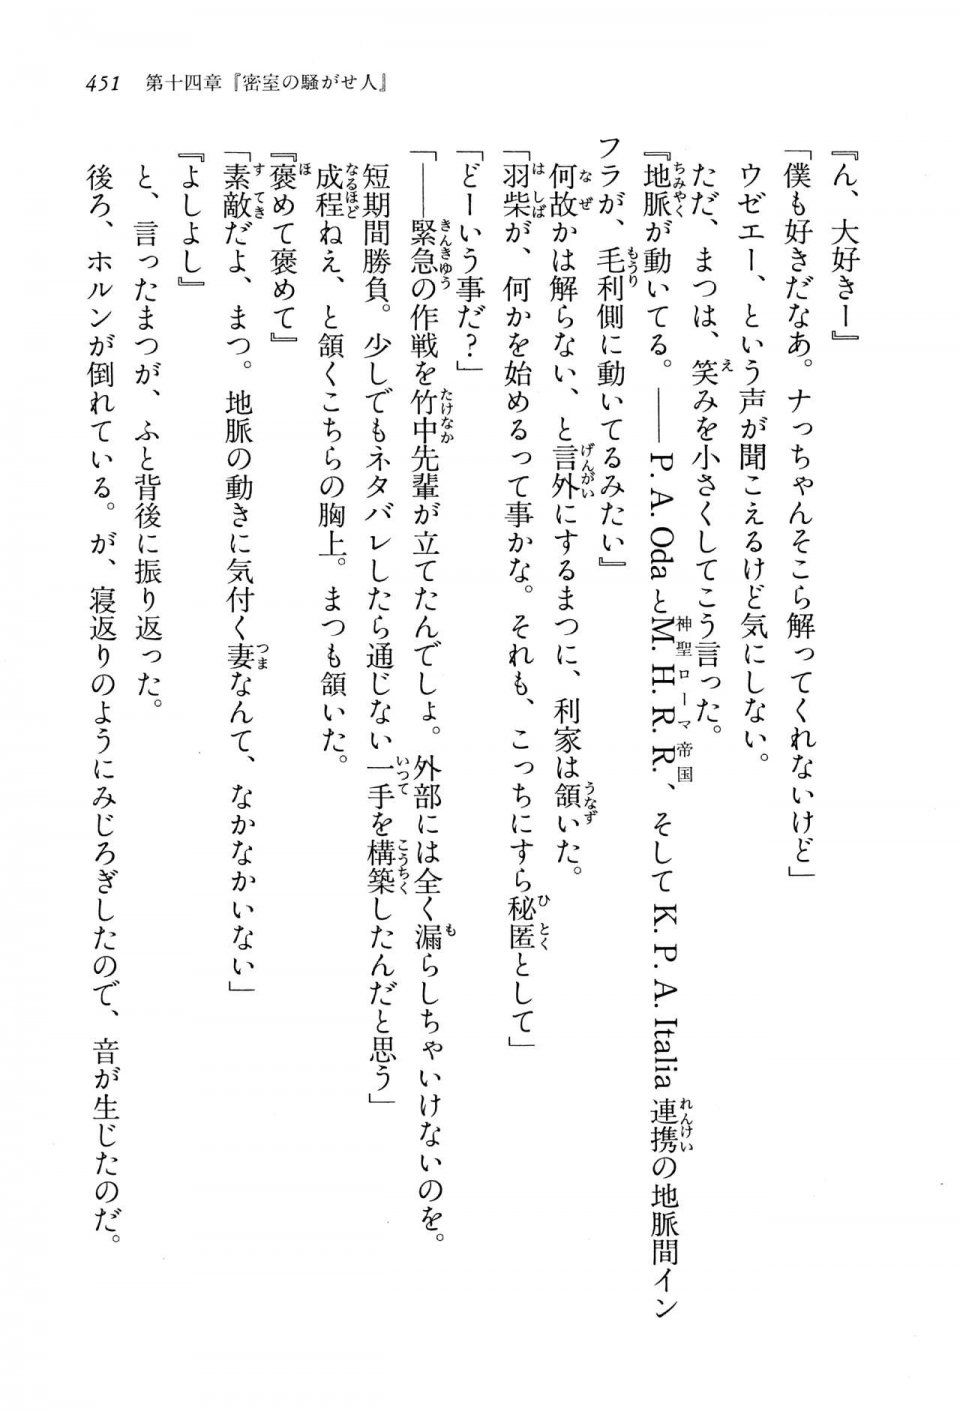 Kyoukai Senjou no Horizon LN Vol 13(6A) - Photo #451